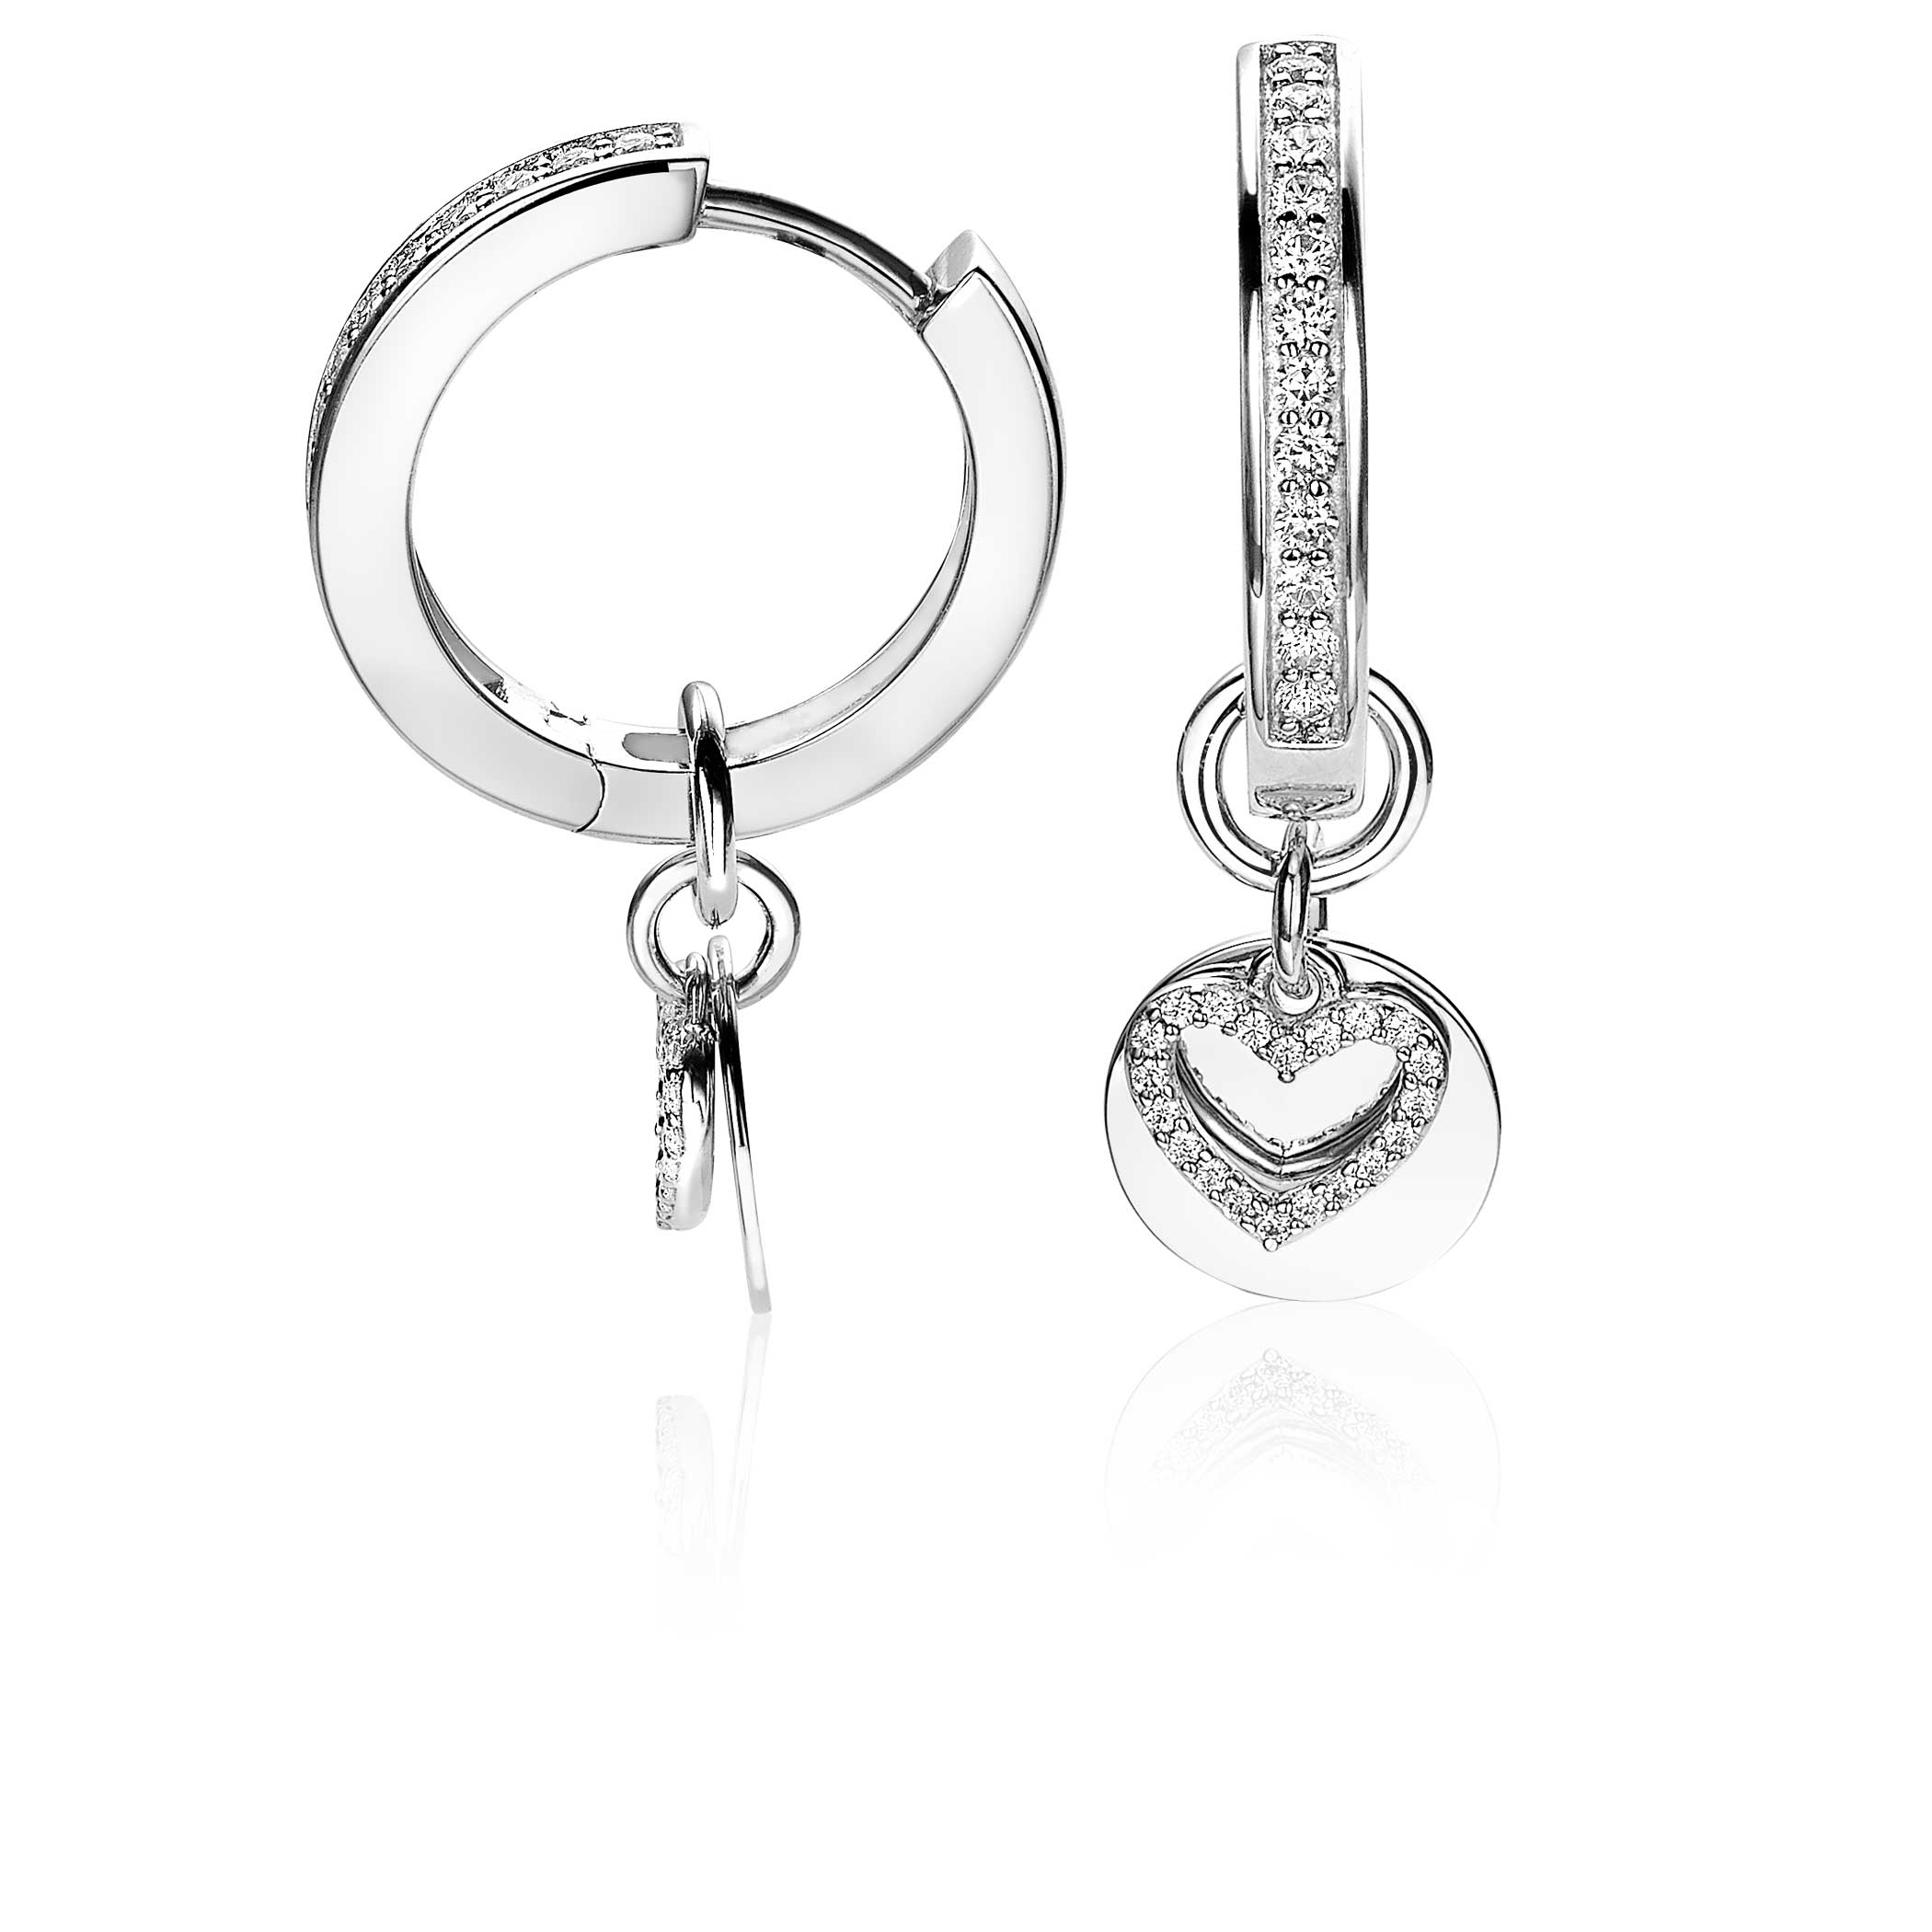 ZINZI Sterling Silver Earrings Pendants Double Heart ZICH1767 (excl. hoop earrings)